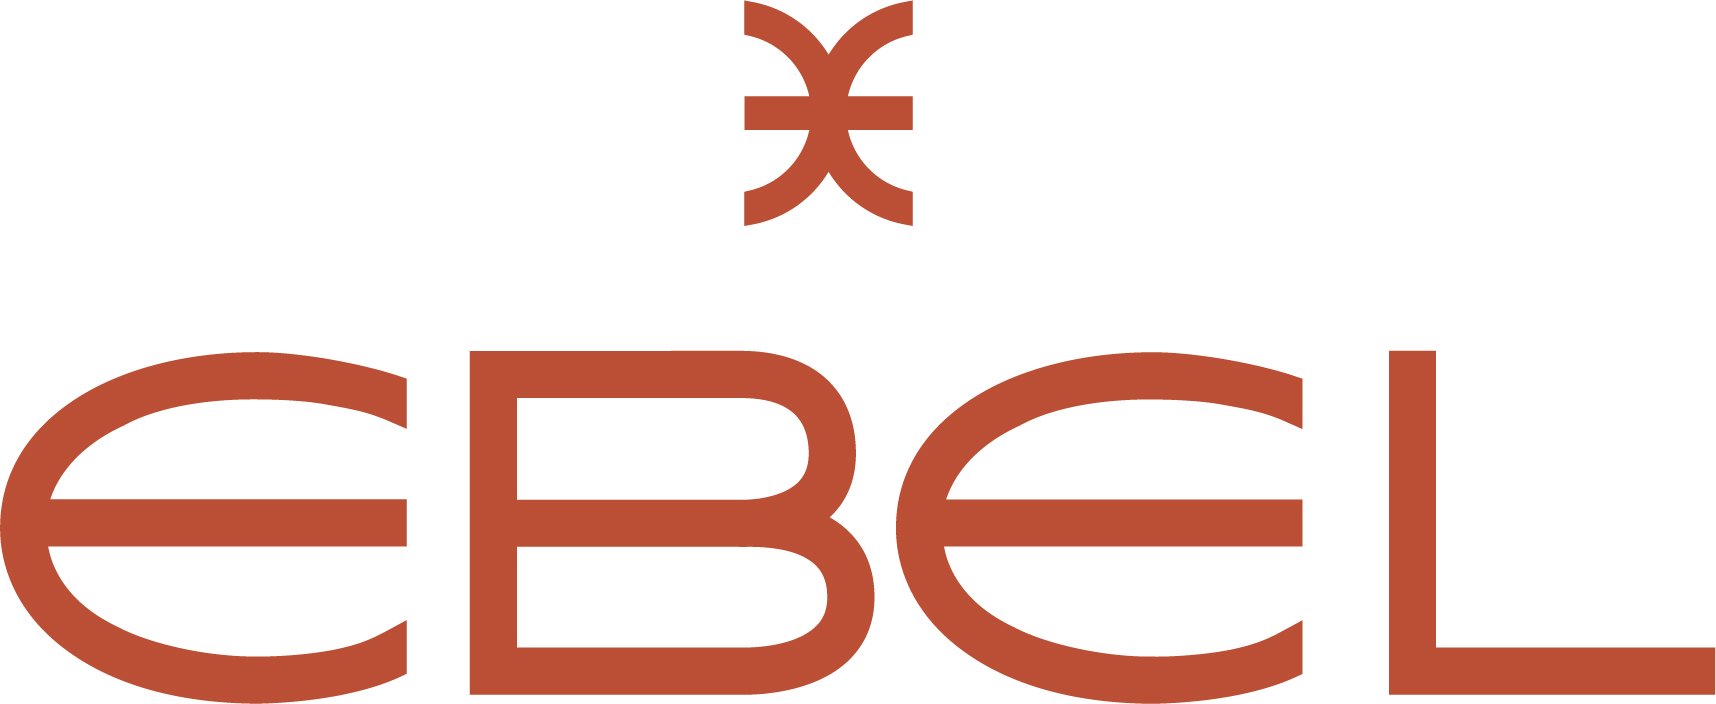 EBEL_logo_2020_THICKER_RGB_NO_BMF_OK